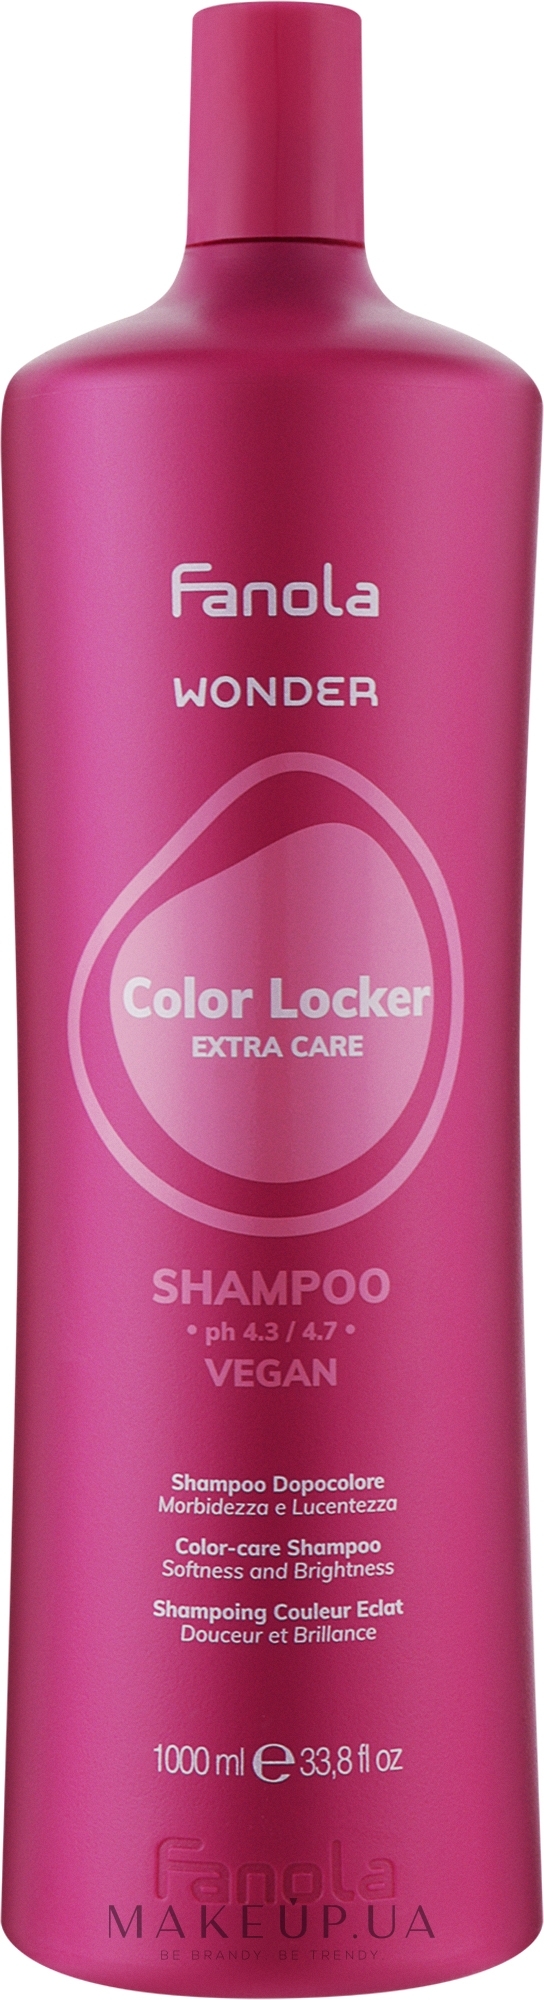 Шампунь для волос - Fanola Wonder Color Locker Shampoo  — фото 1000ml